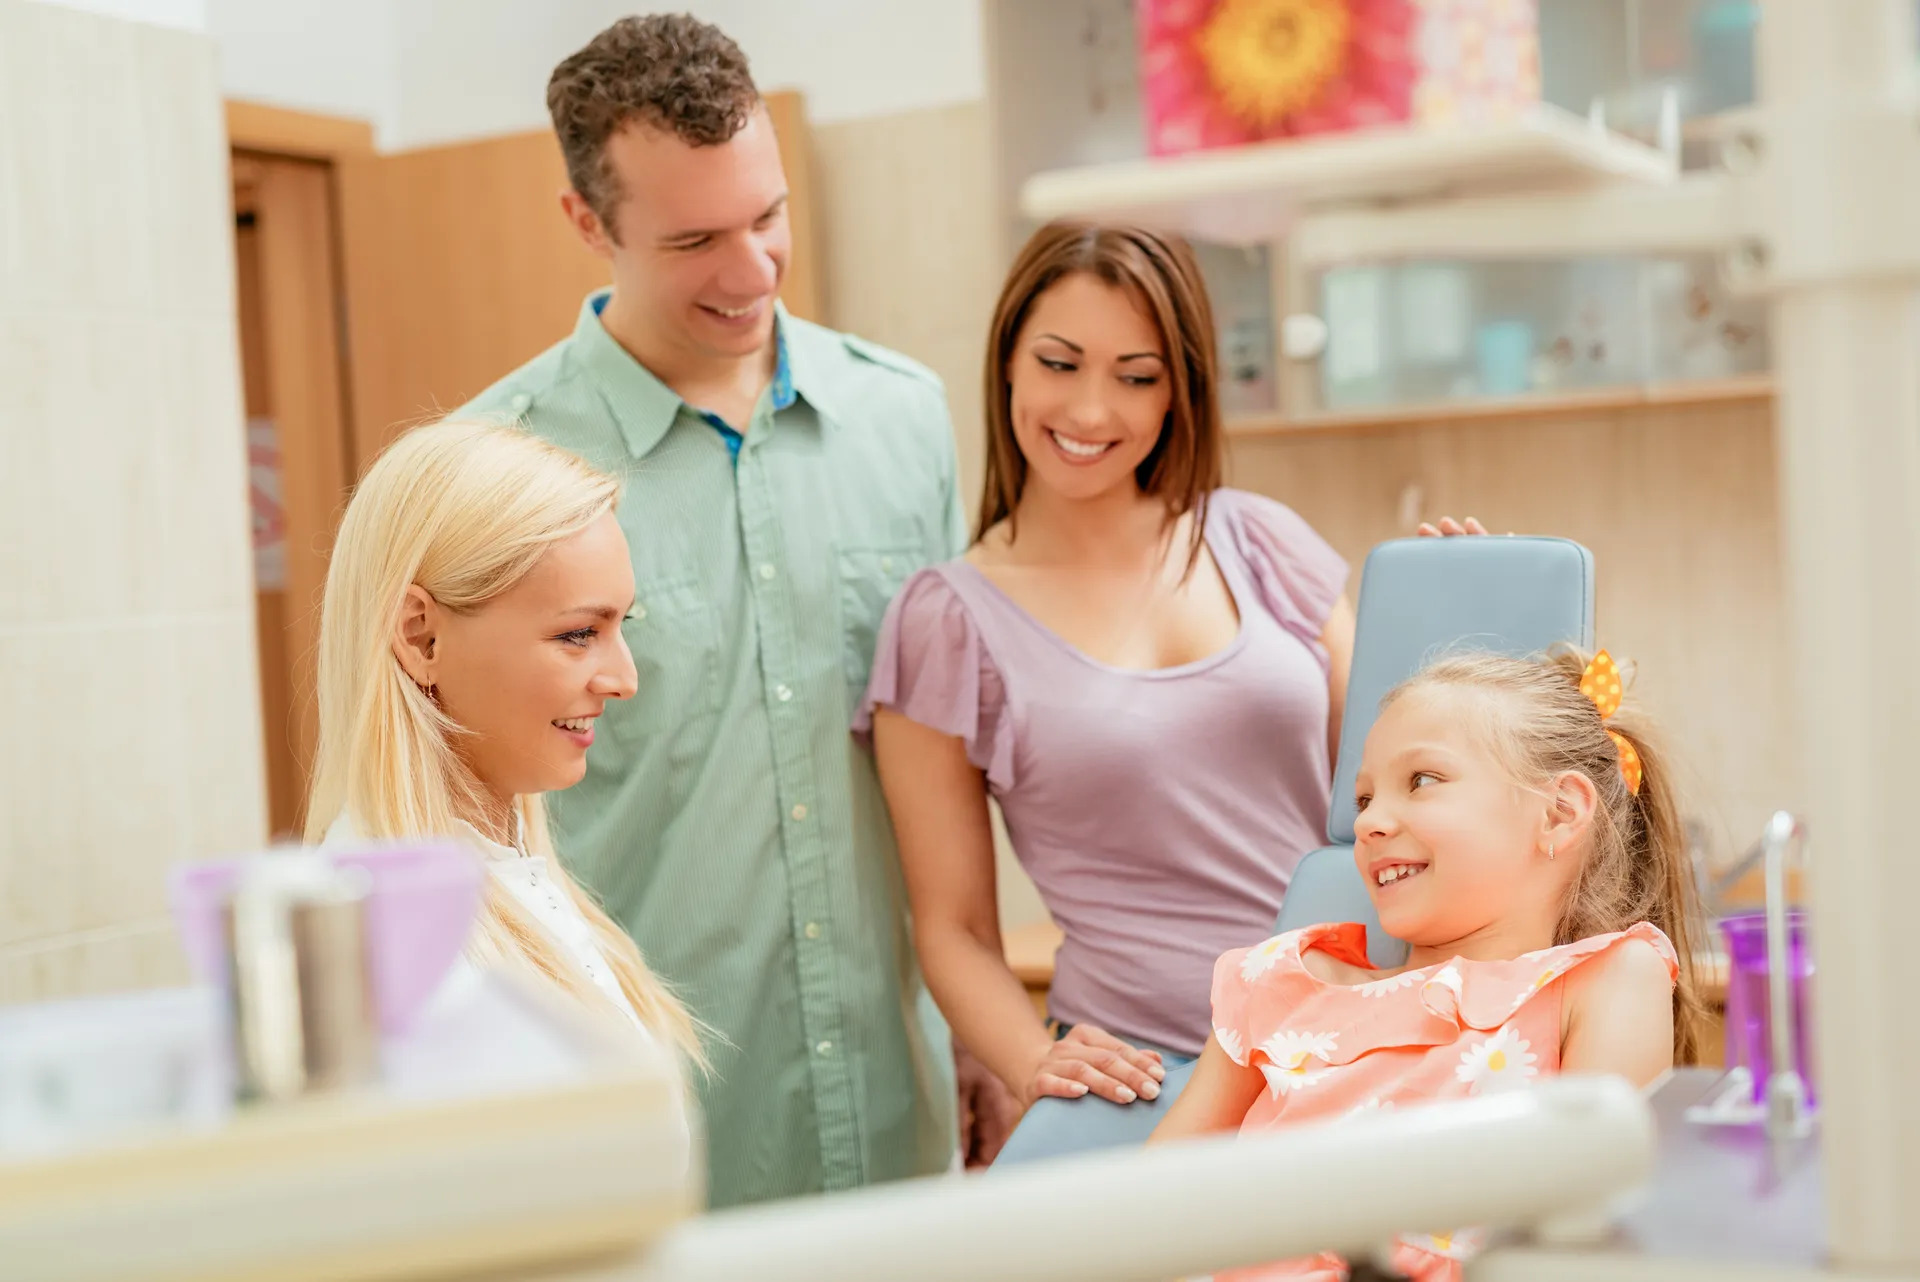 Dentist Tips that Make Kids Smile